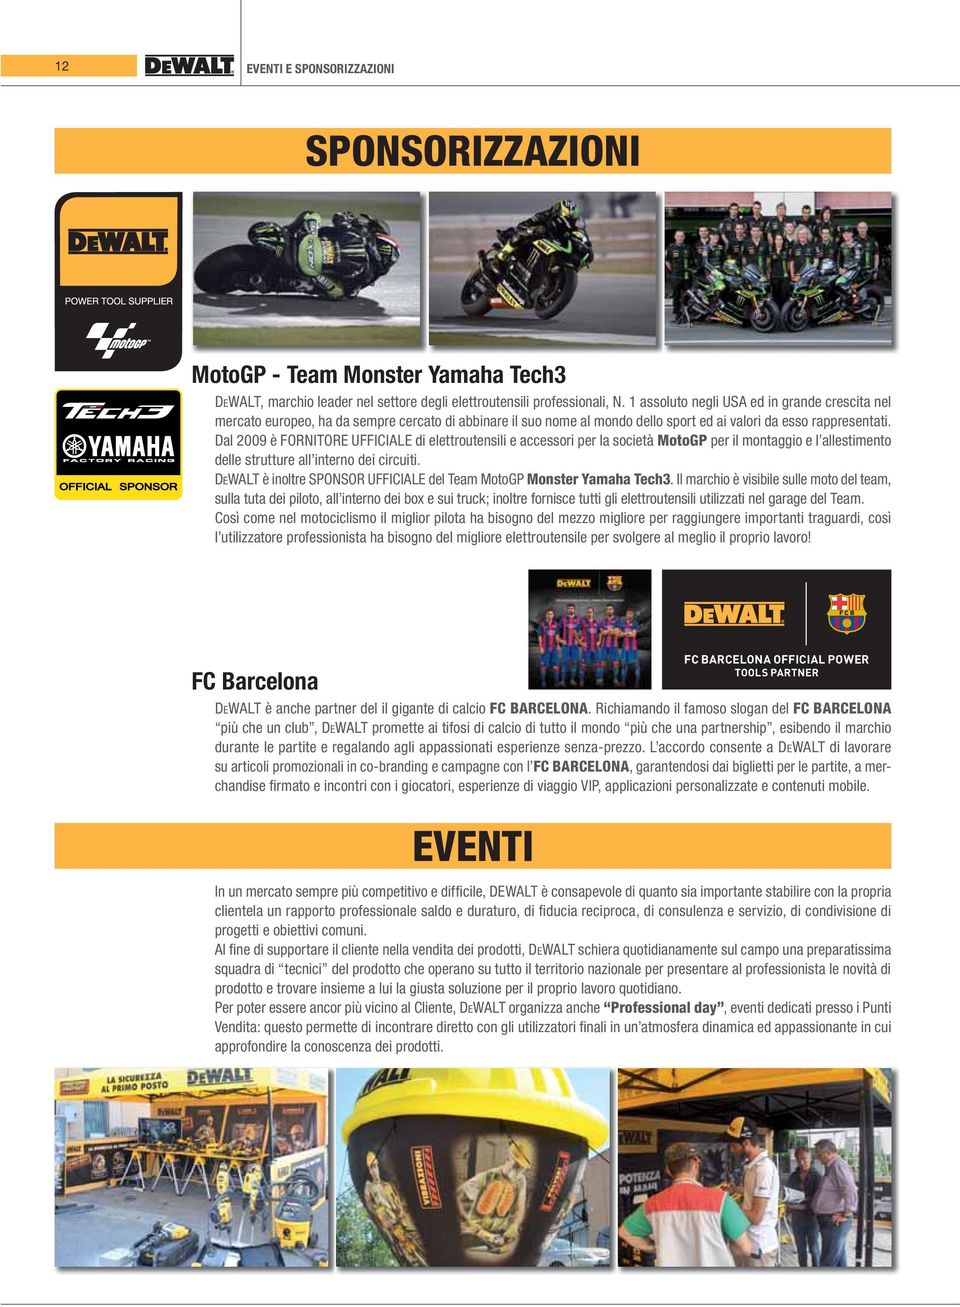 Dal 2009 è FORNITORE UFFICIALE di elettroutensili e accessori per la società MotoGP per il montaggio e l allestimento delle strutture all interno dei circuiti.